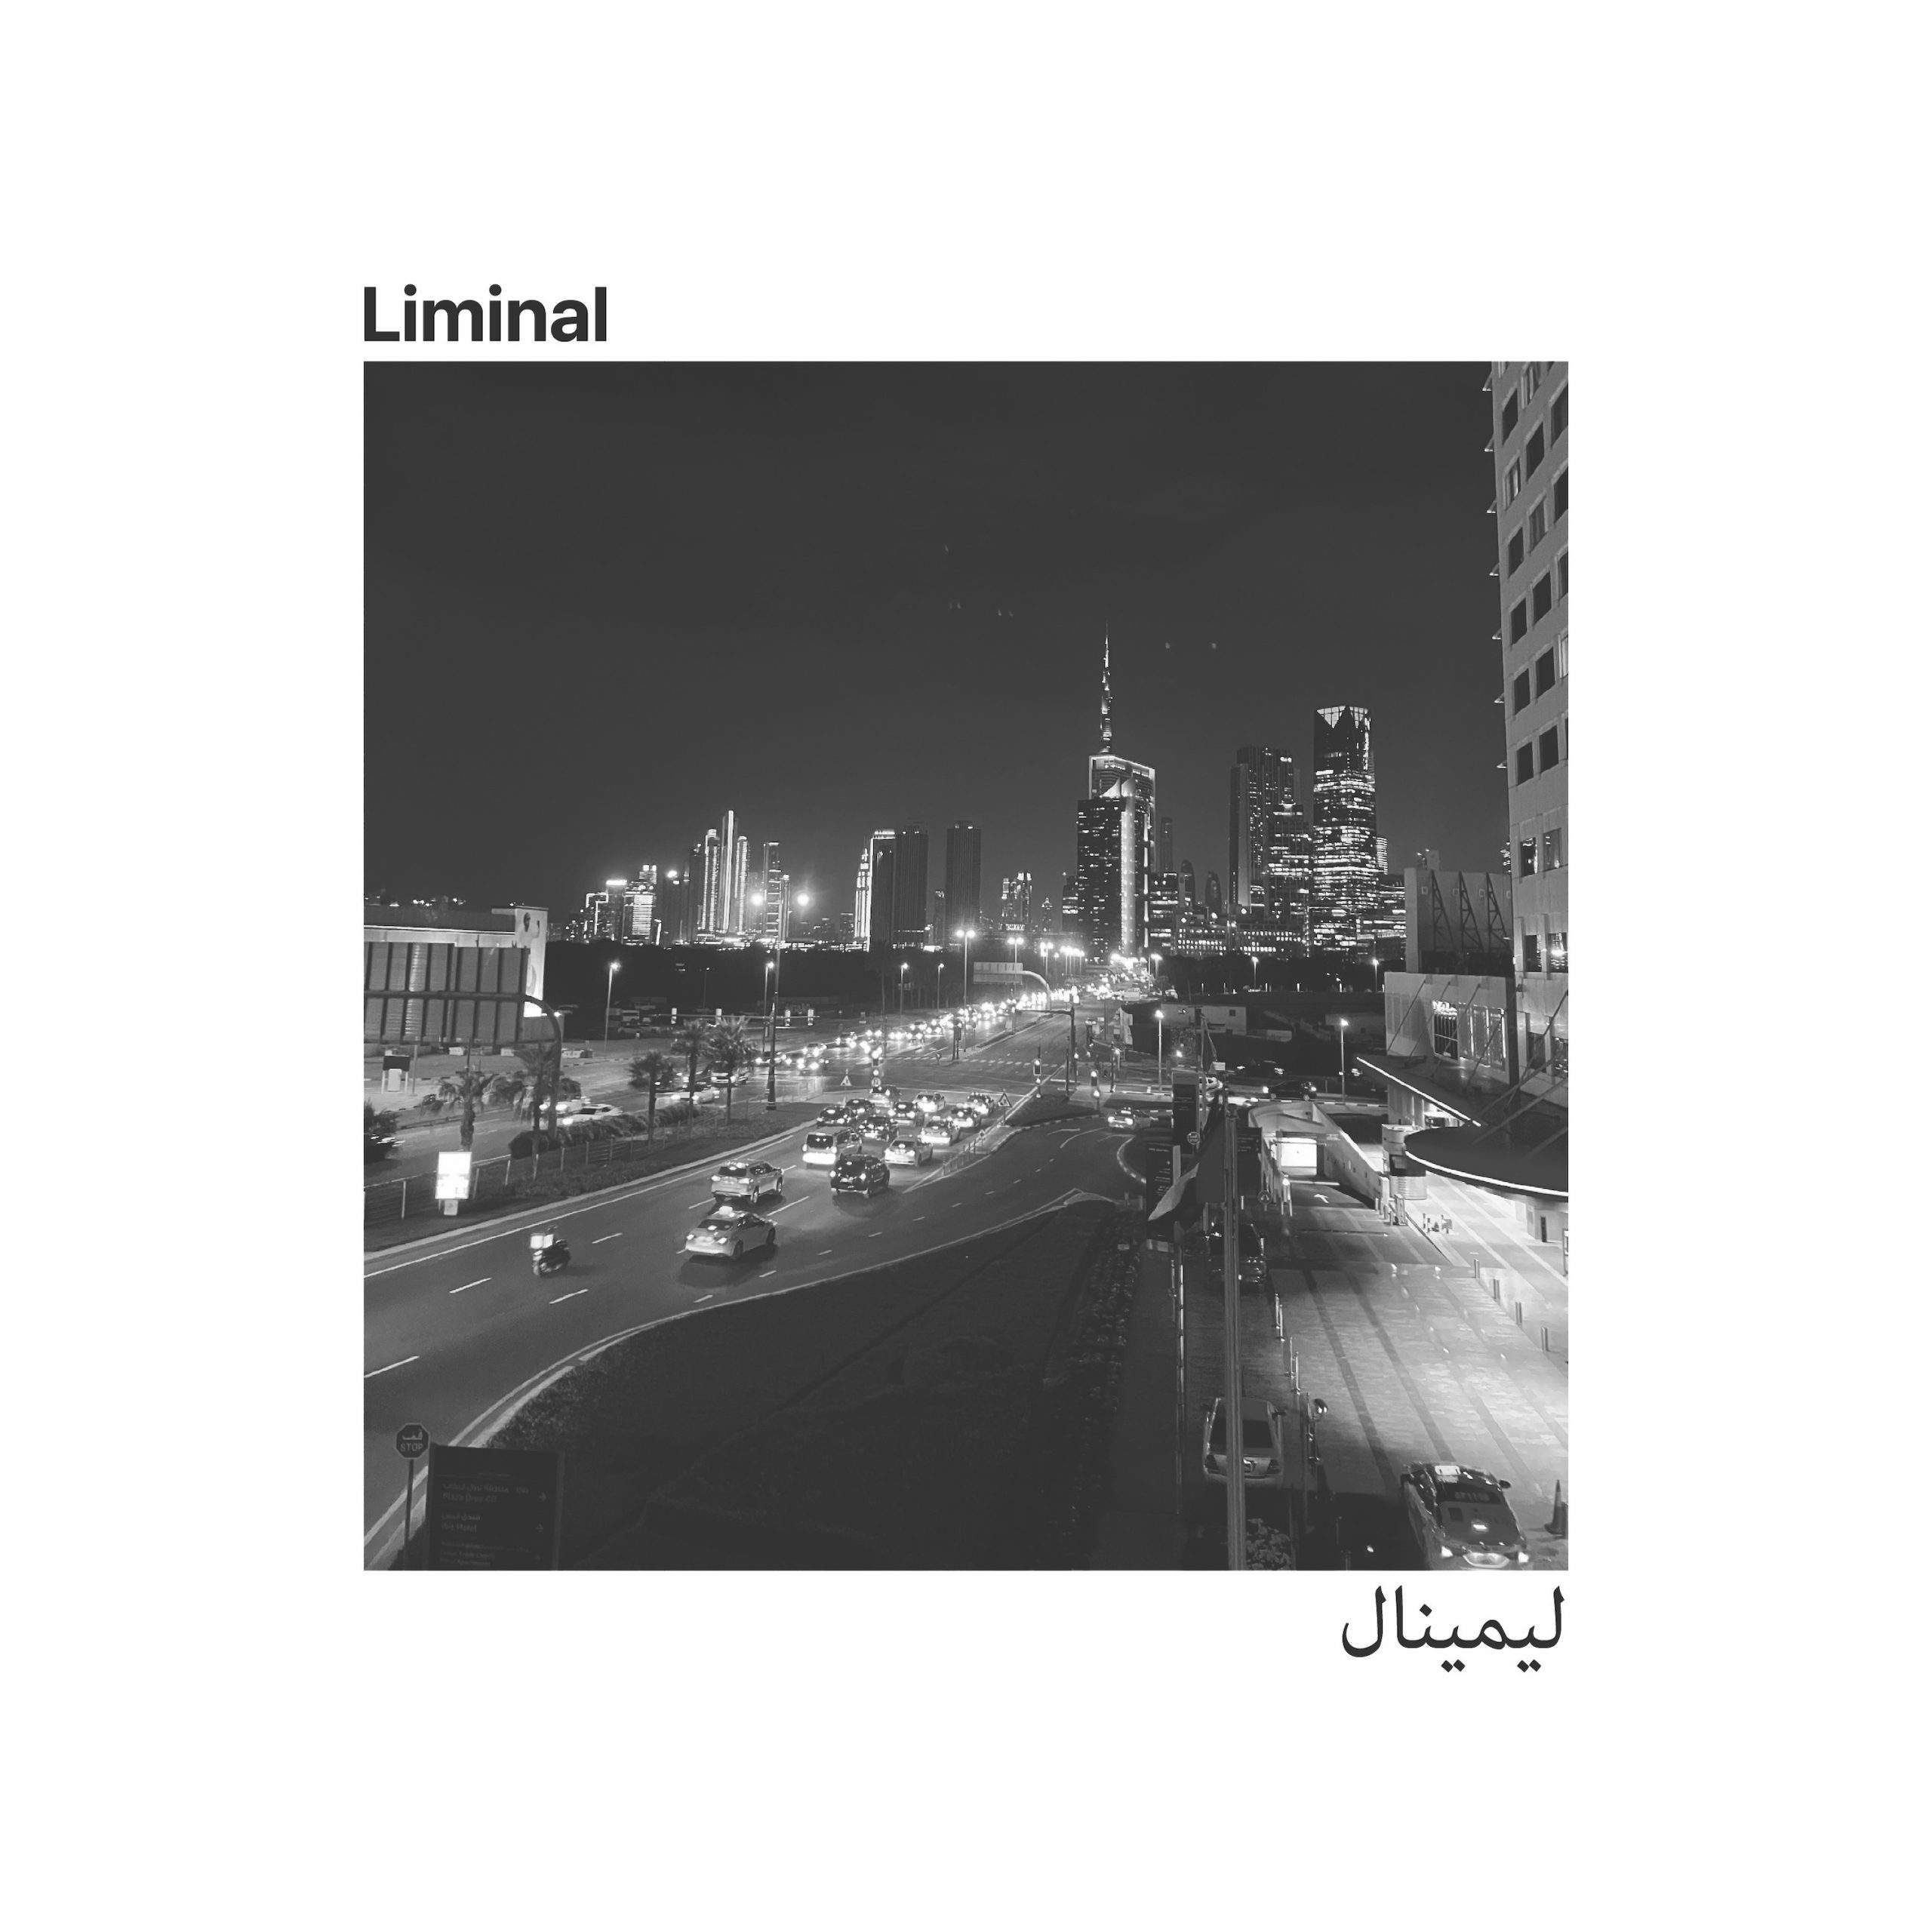 Xxjaswani’s “Liminal” album Achieves Milestone with Over 100,000 Worldwide Streams on Spotify